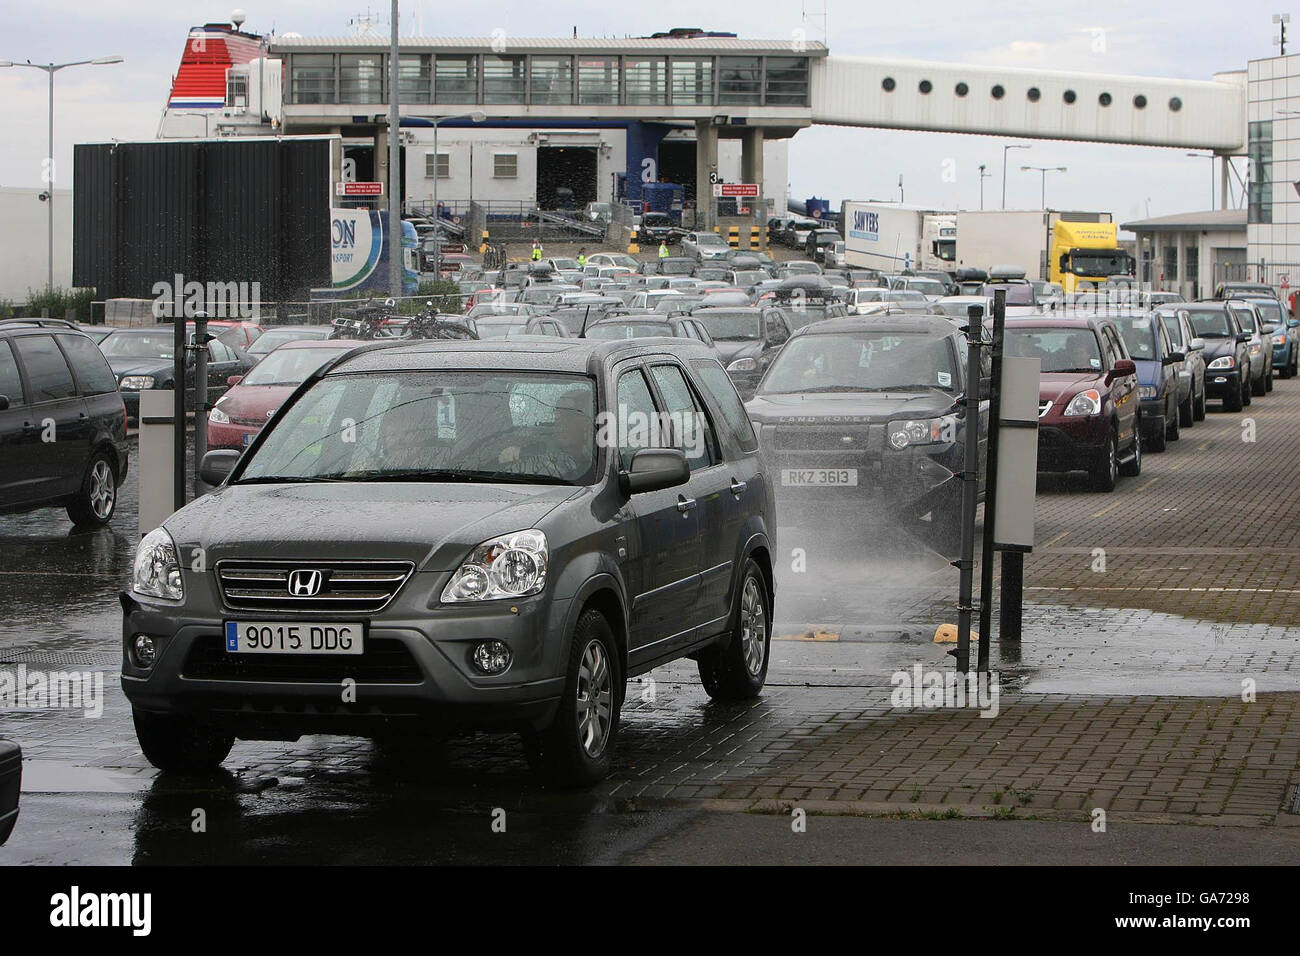 Les voitures et les camions sont vaporisés de désinfectant lorsqu'ils entrent dans le port de Dun Laoghaire à Dublin. Tous les ports et aéroports d'Irlande ont été mis en alerte ce soir à la suite de l'épidémie de fièvre aphteuse au Royaume-Uni. Banque D'Images